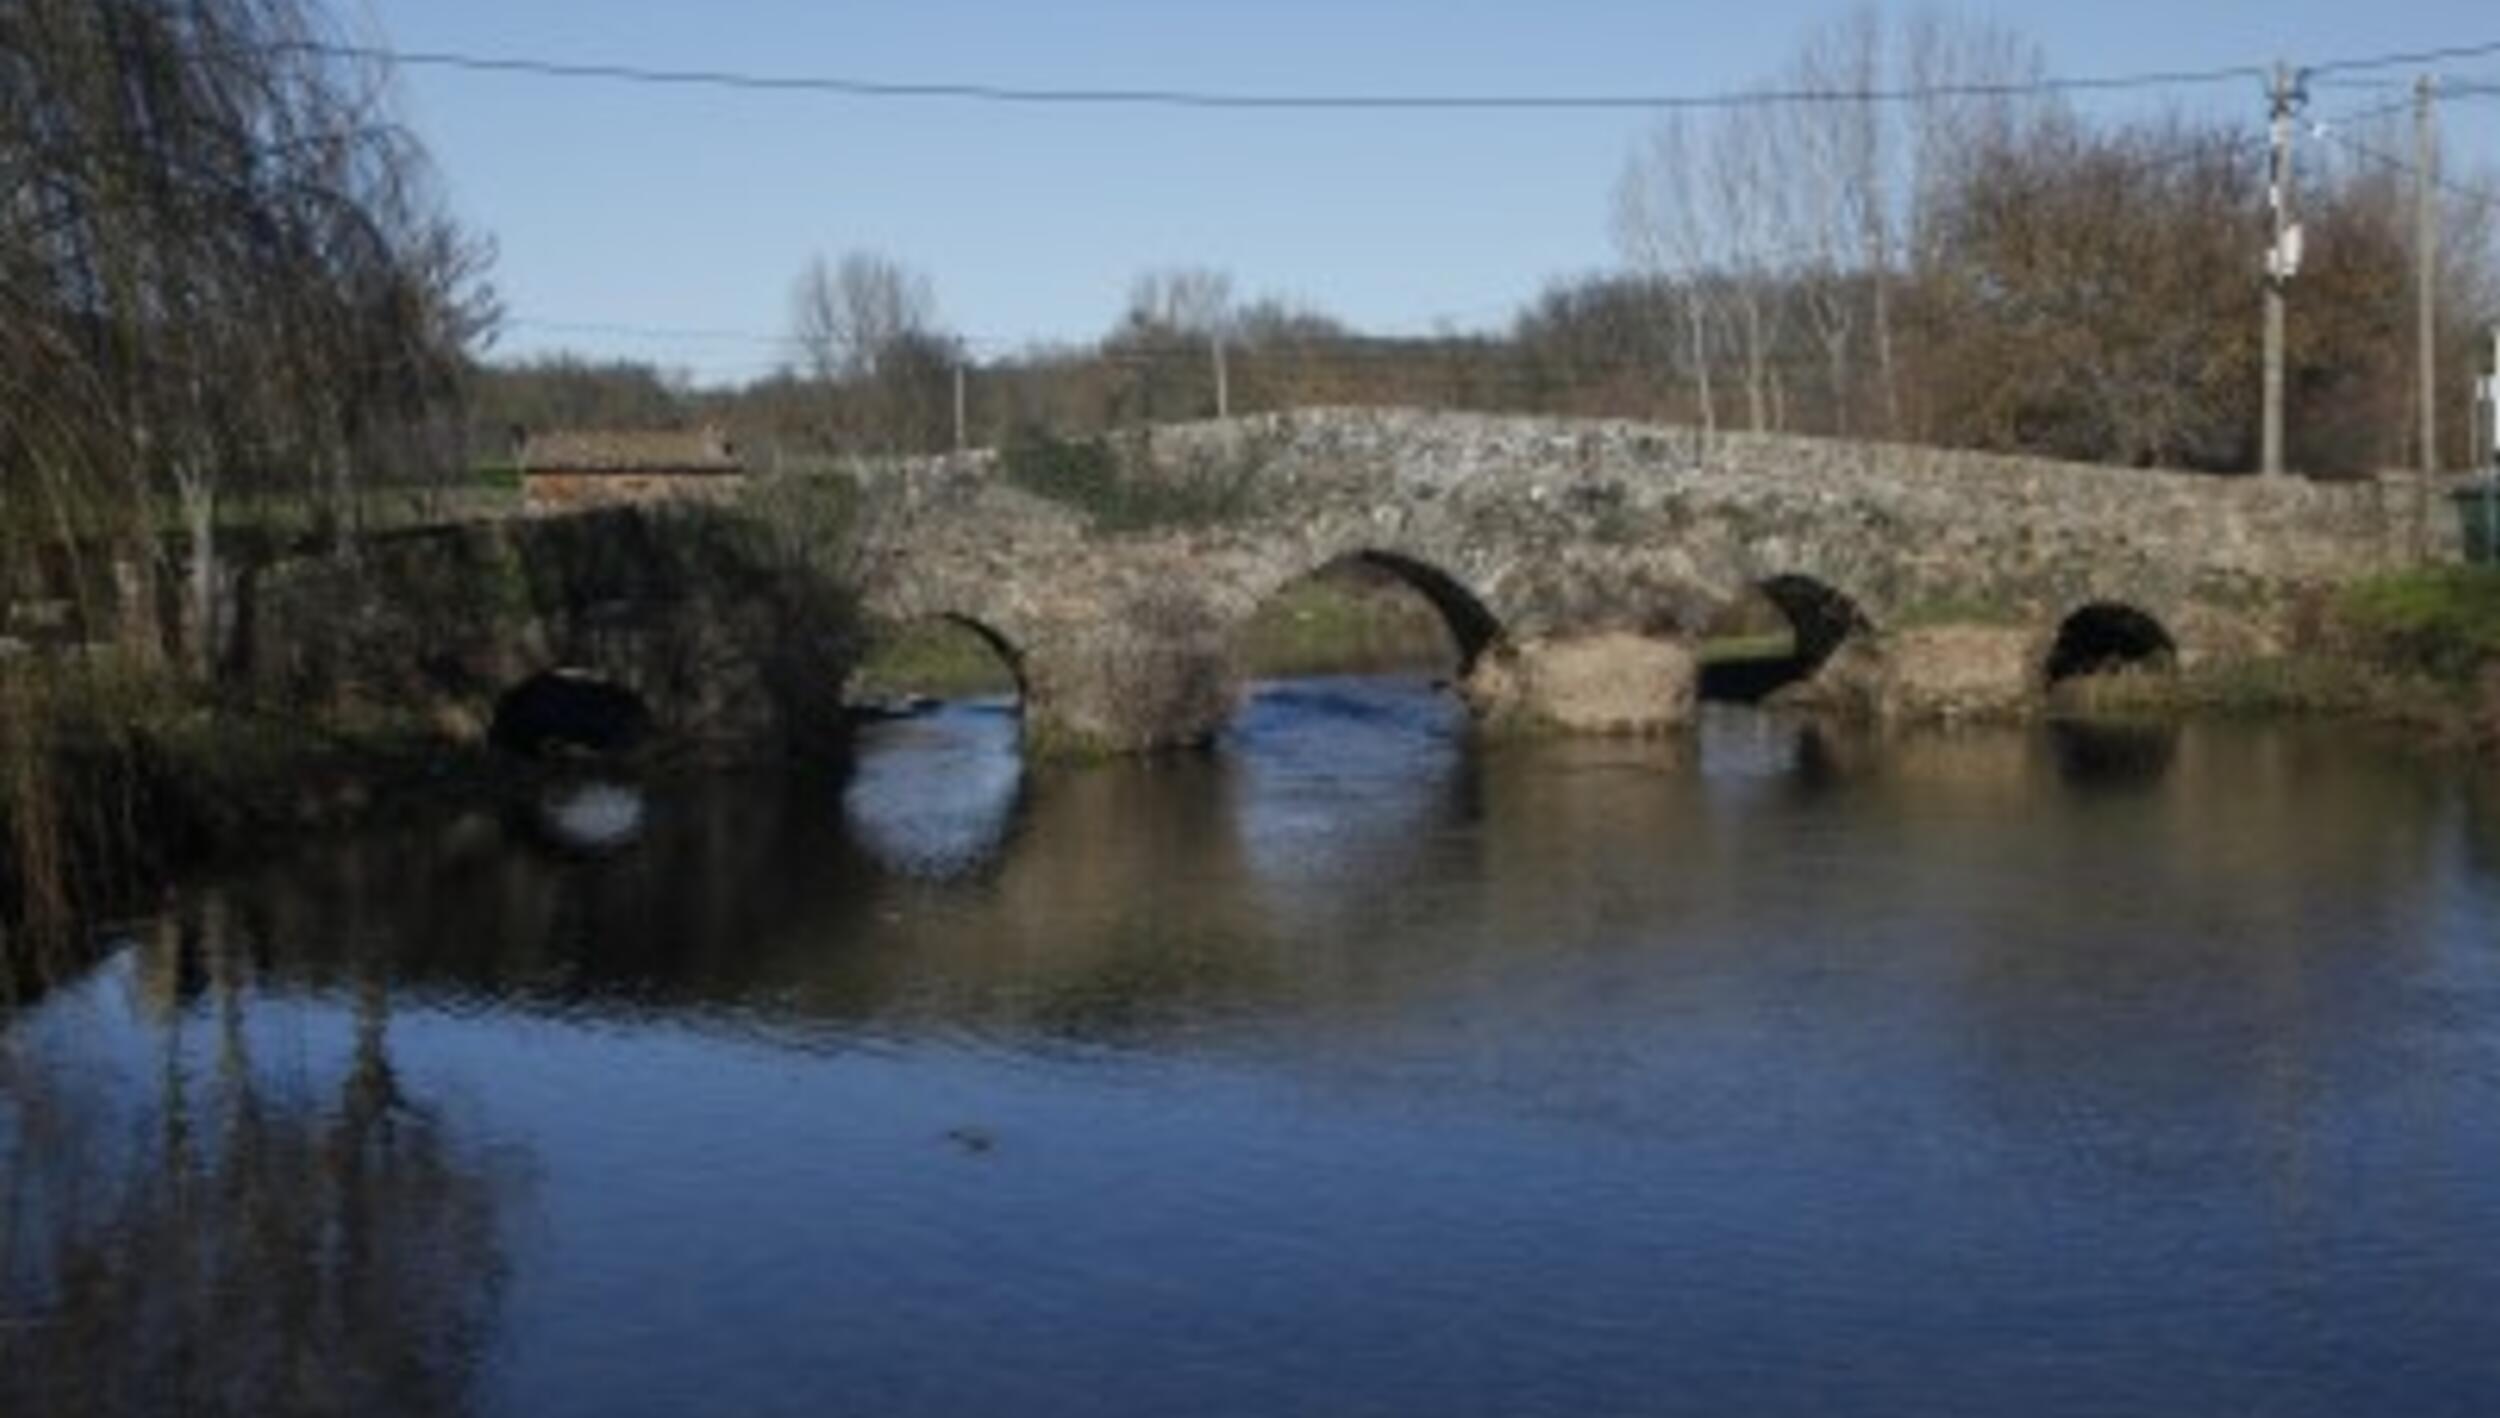 Ponte Medieval de Frieira